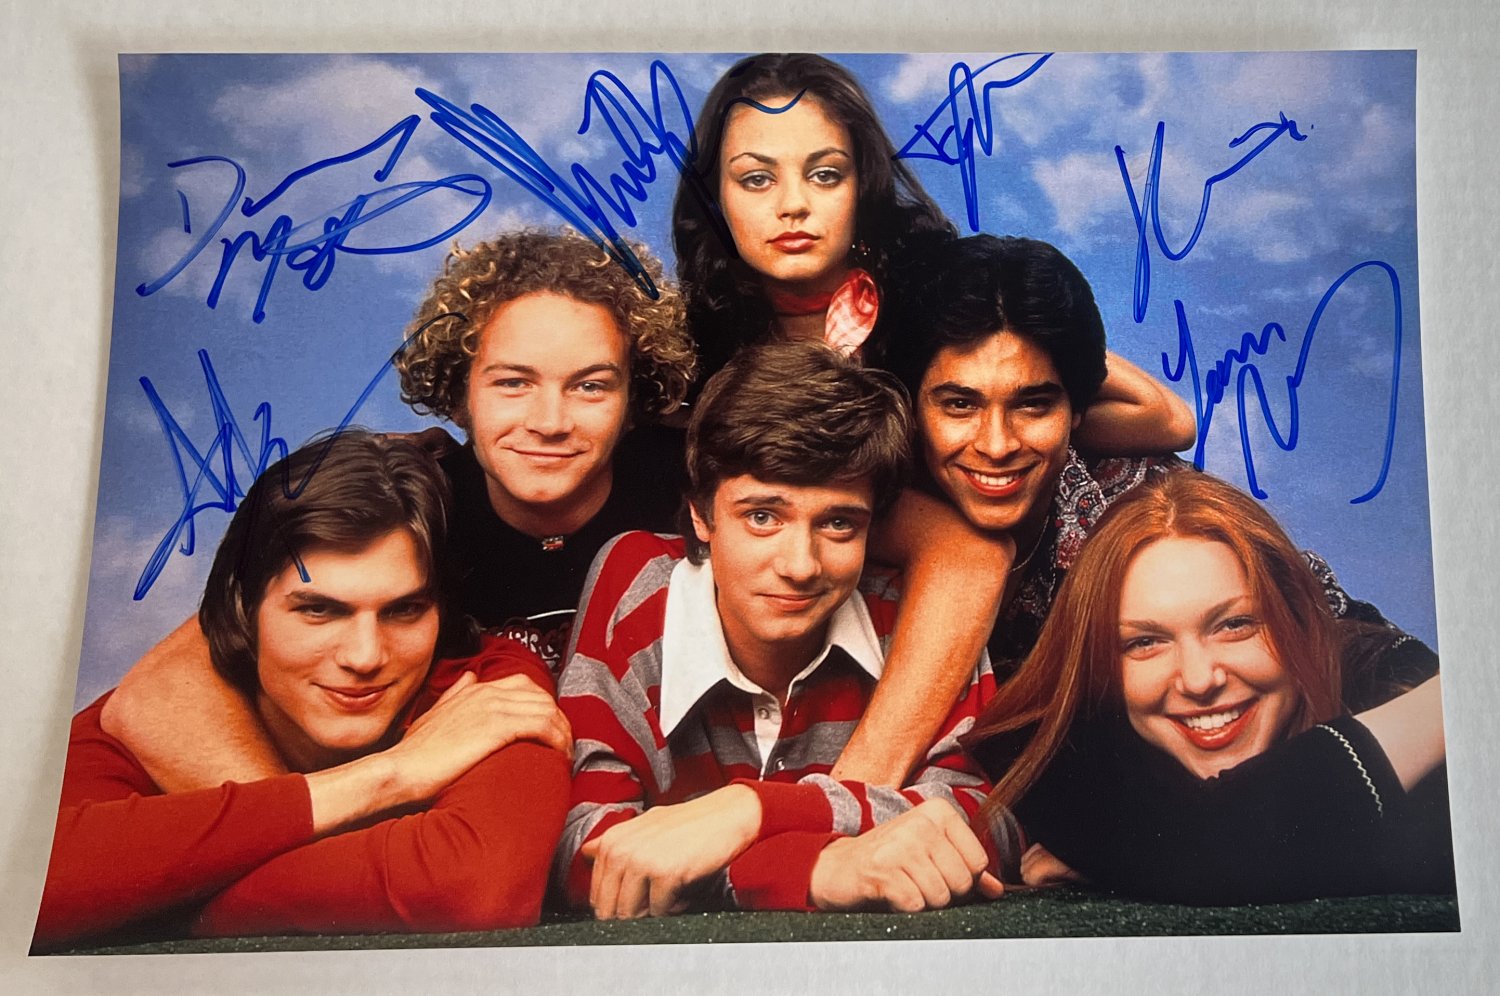 That '70s Show cast signed autographed 8x12 photo Ashton Kutcher Mila Kunis autographs